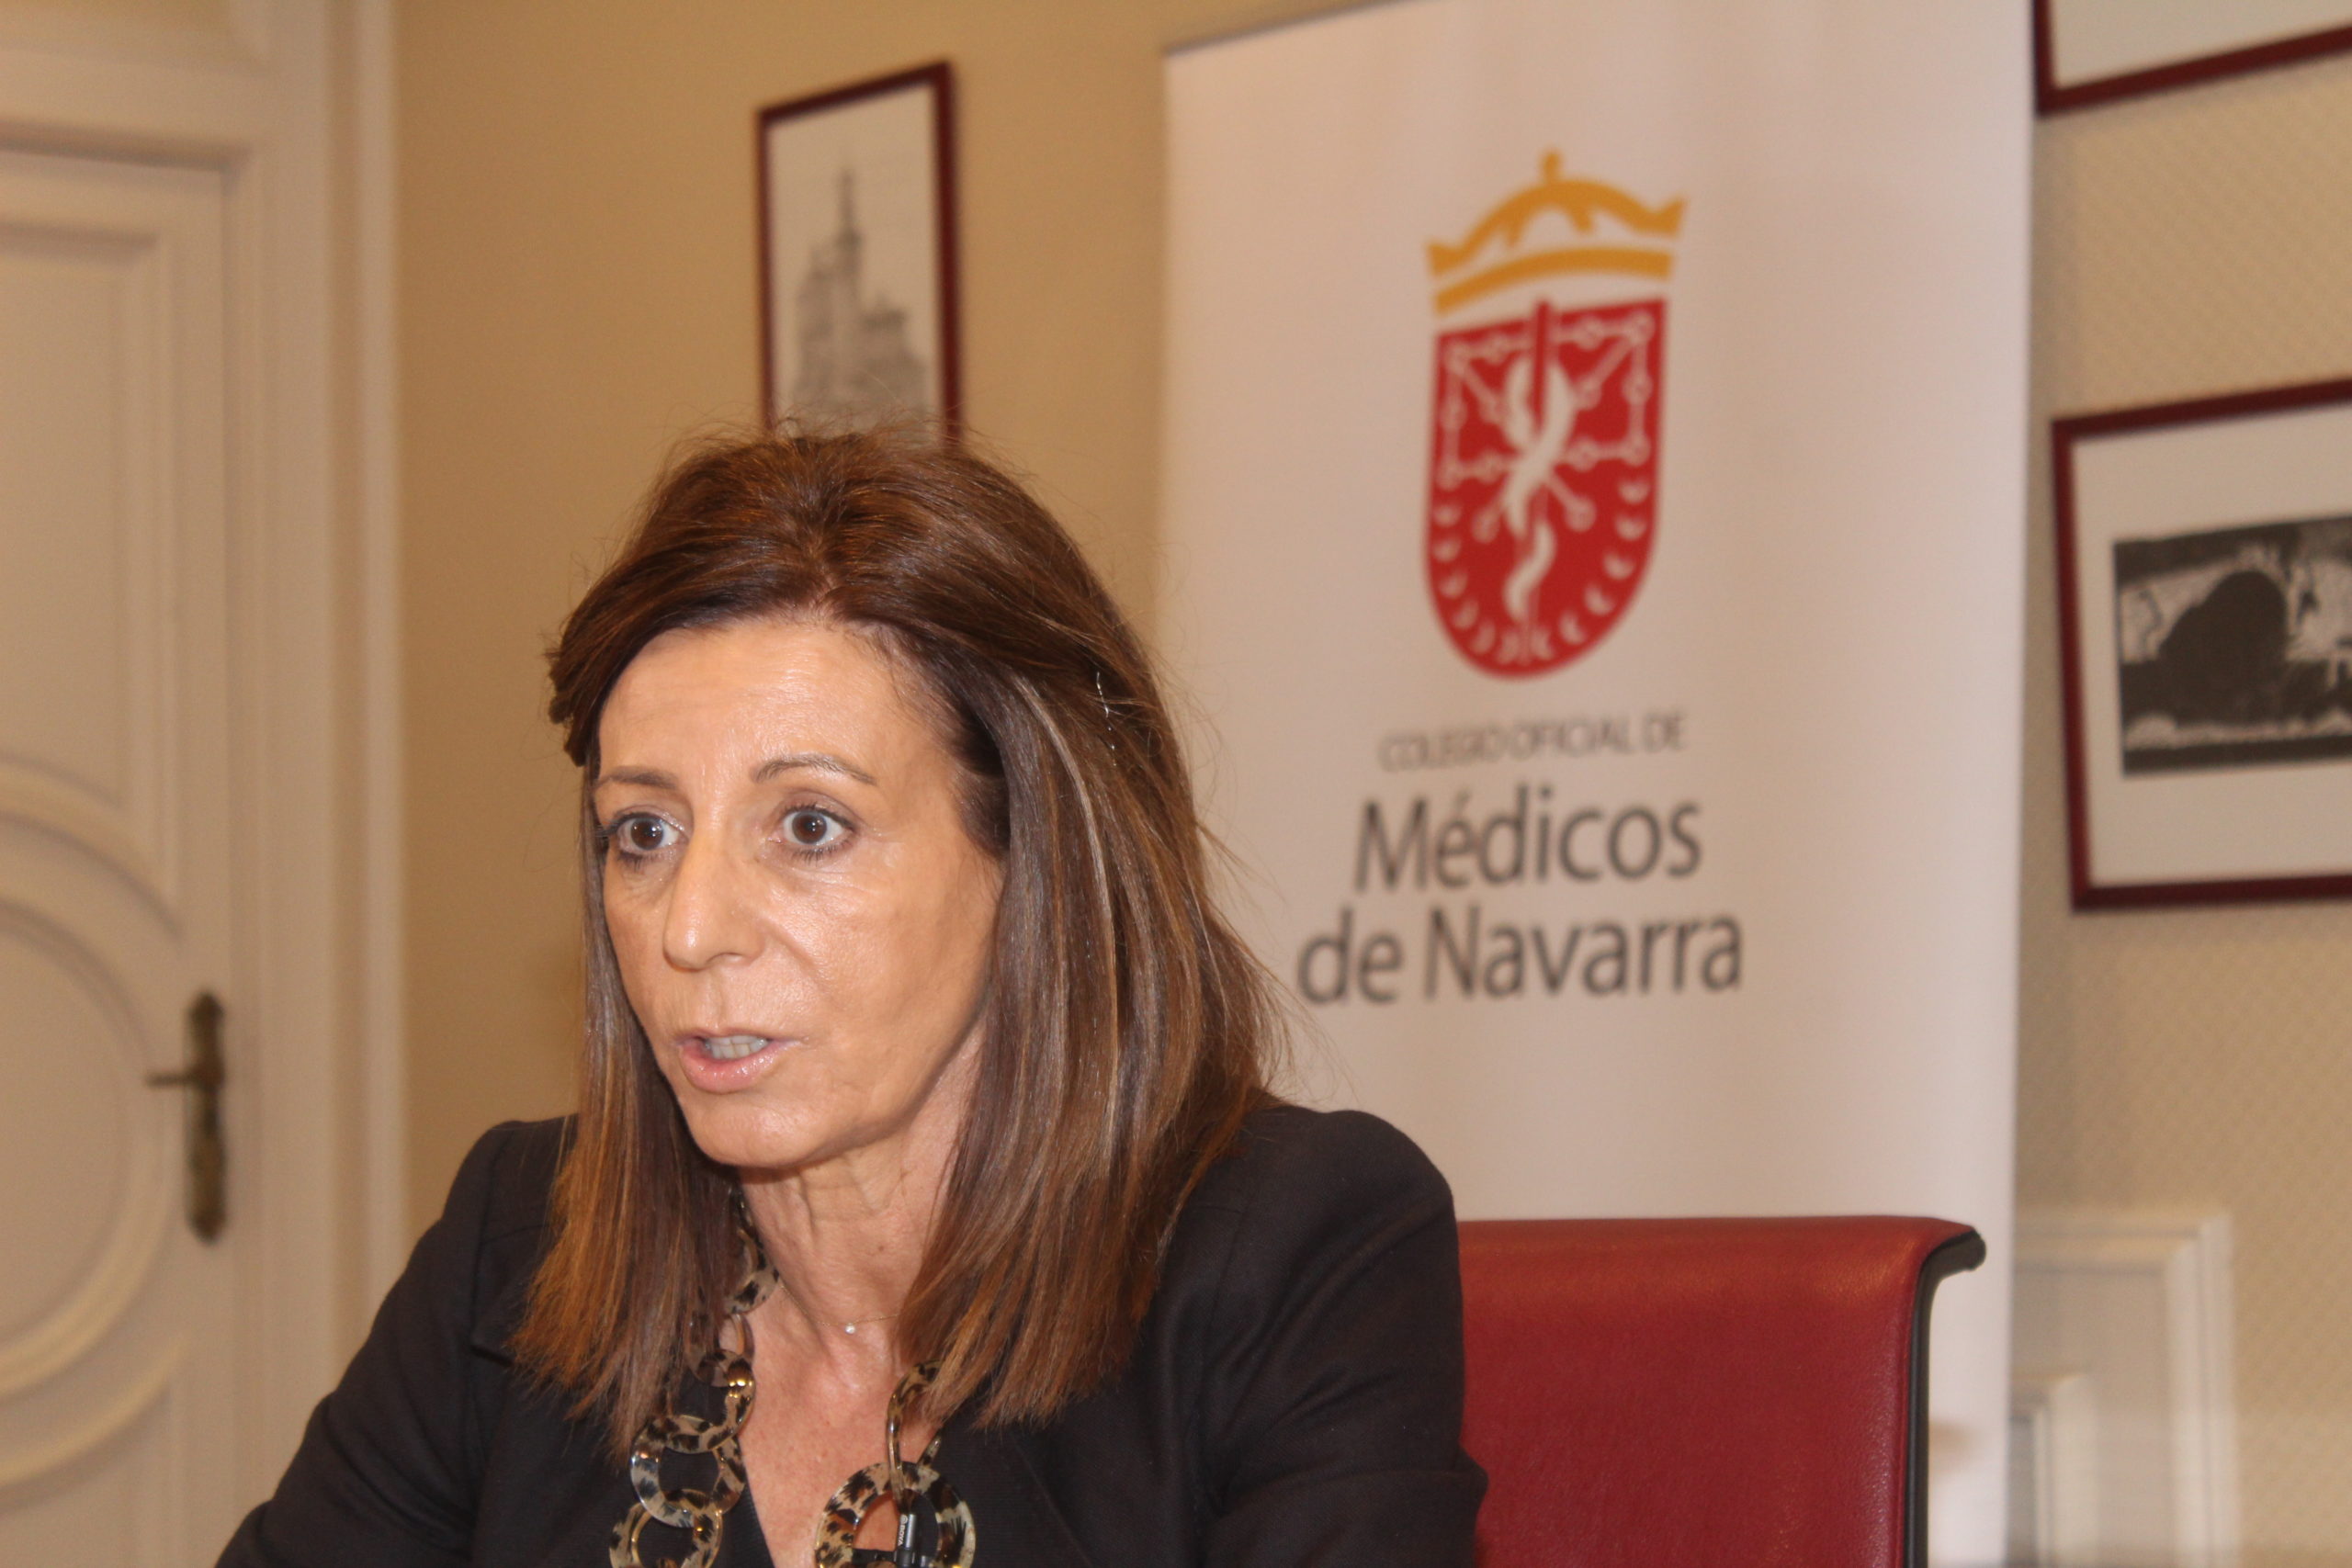 Dra. Eva Recari: “La gestación por sustitución con contraprestación económica es contraria a la Deontología Médica”